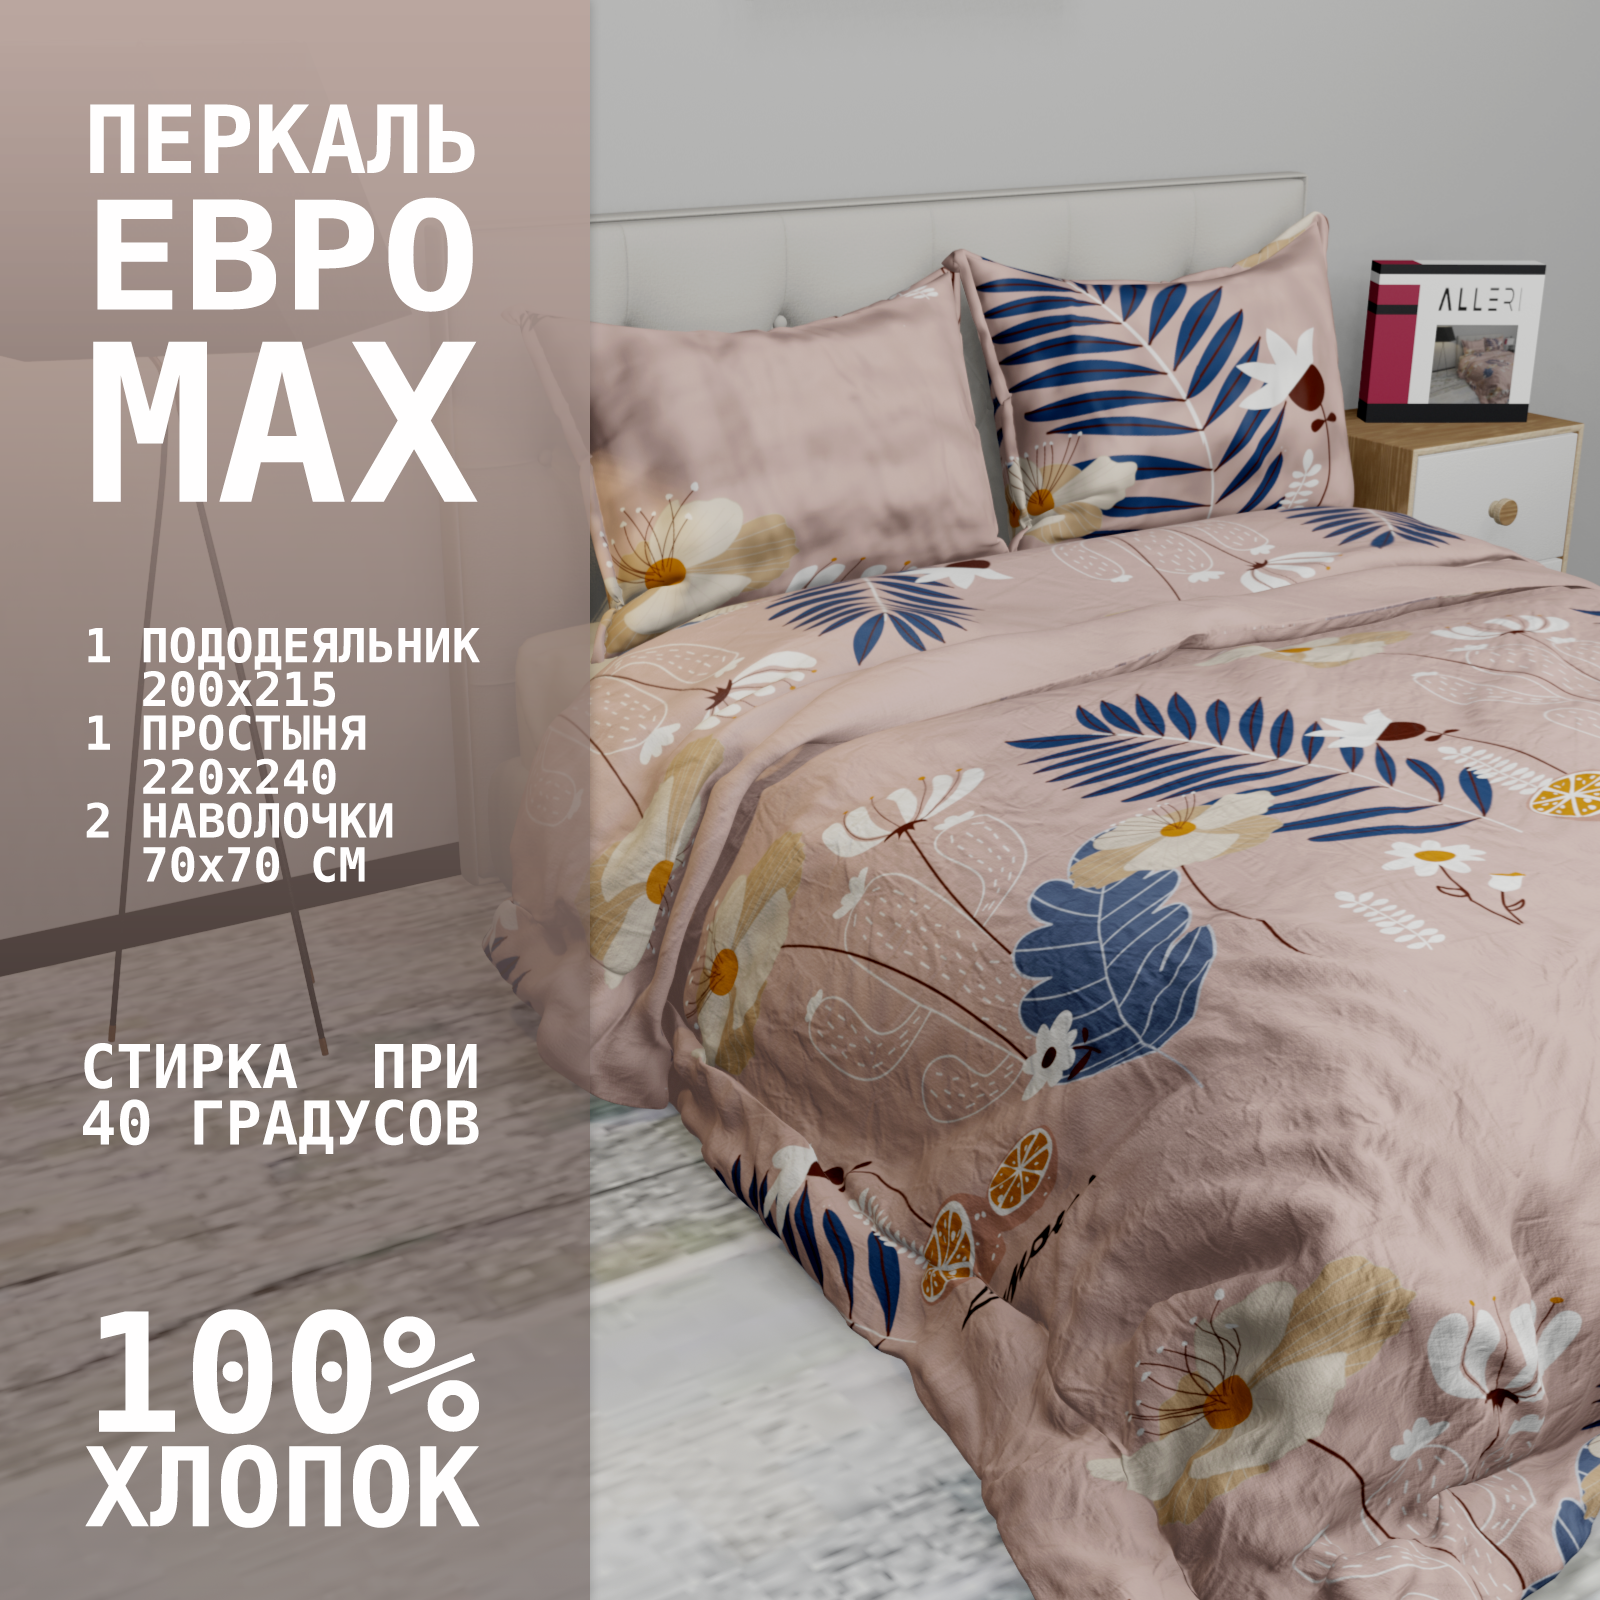 Комплект постельного белья Alleri Перкаль Elite, Пер-090, ЕВРО MAX